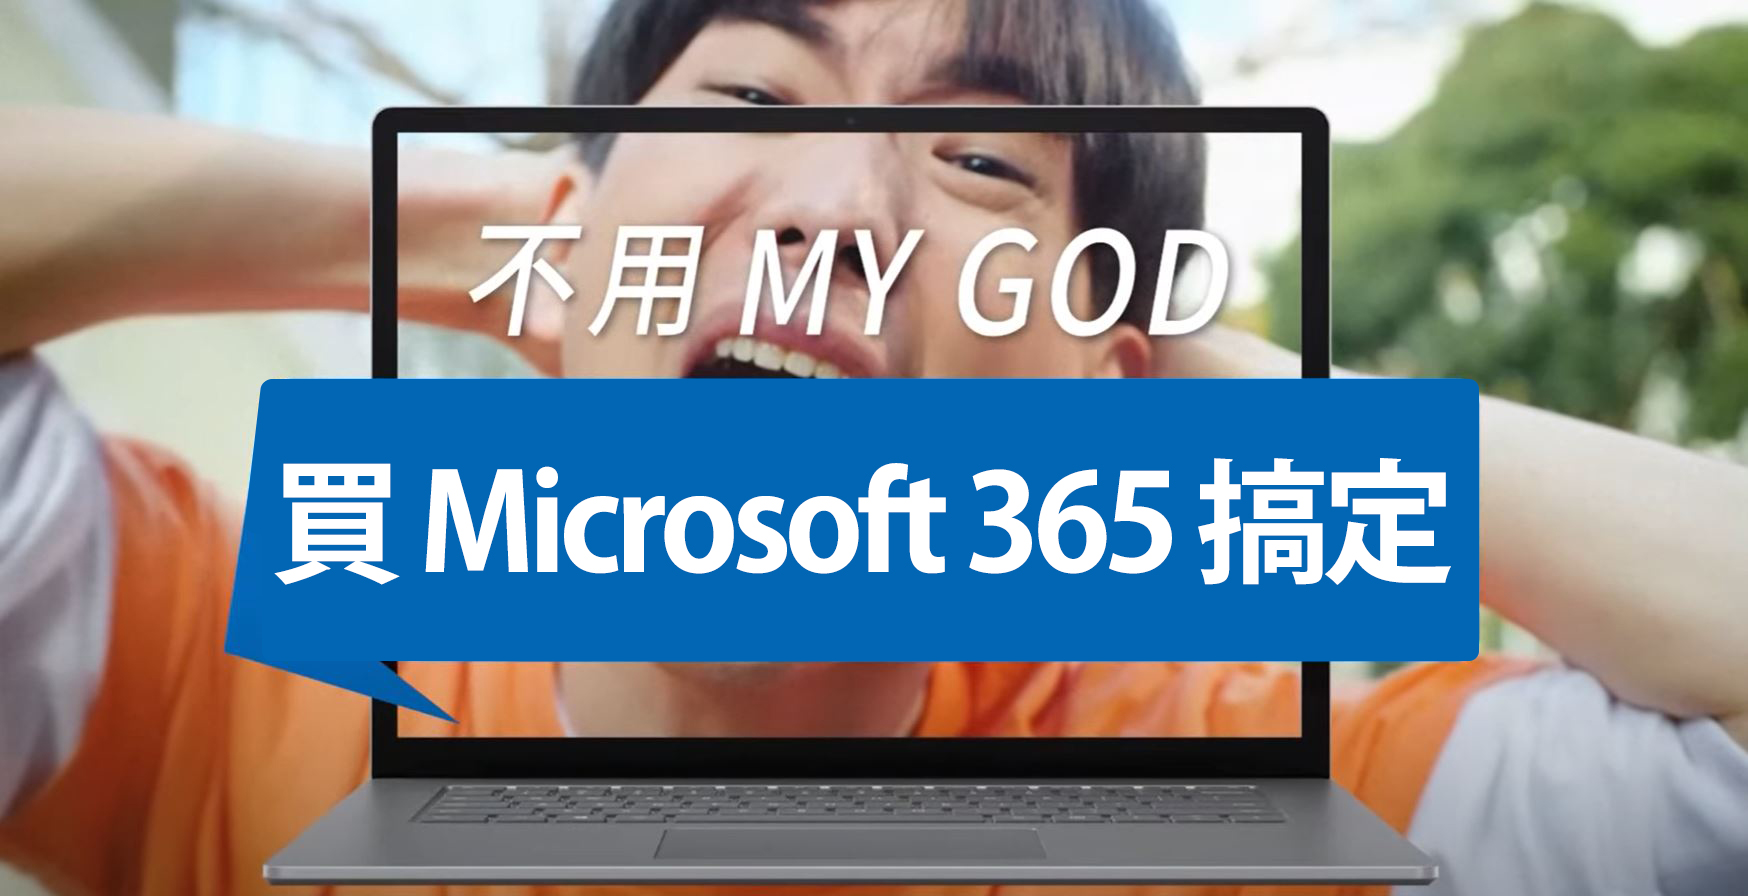 微軟 Microsoft 365 全新高效登場★創造更多屬於自己的時間